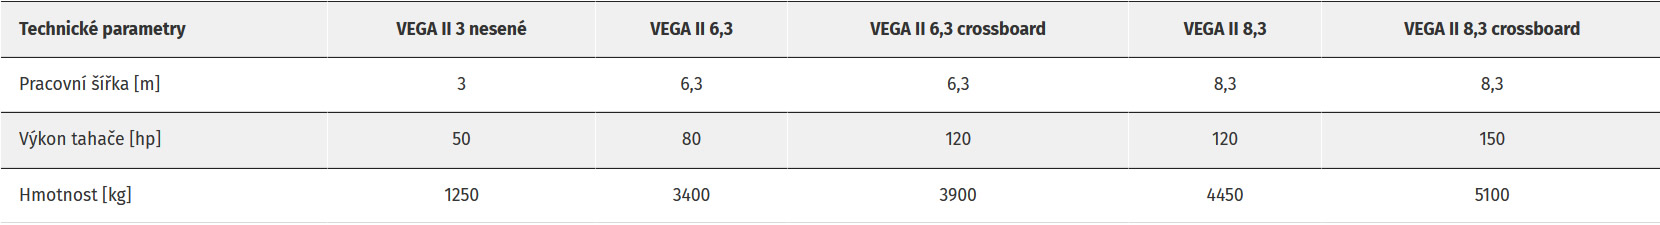 Vega II